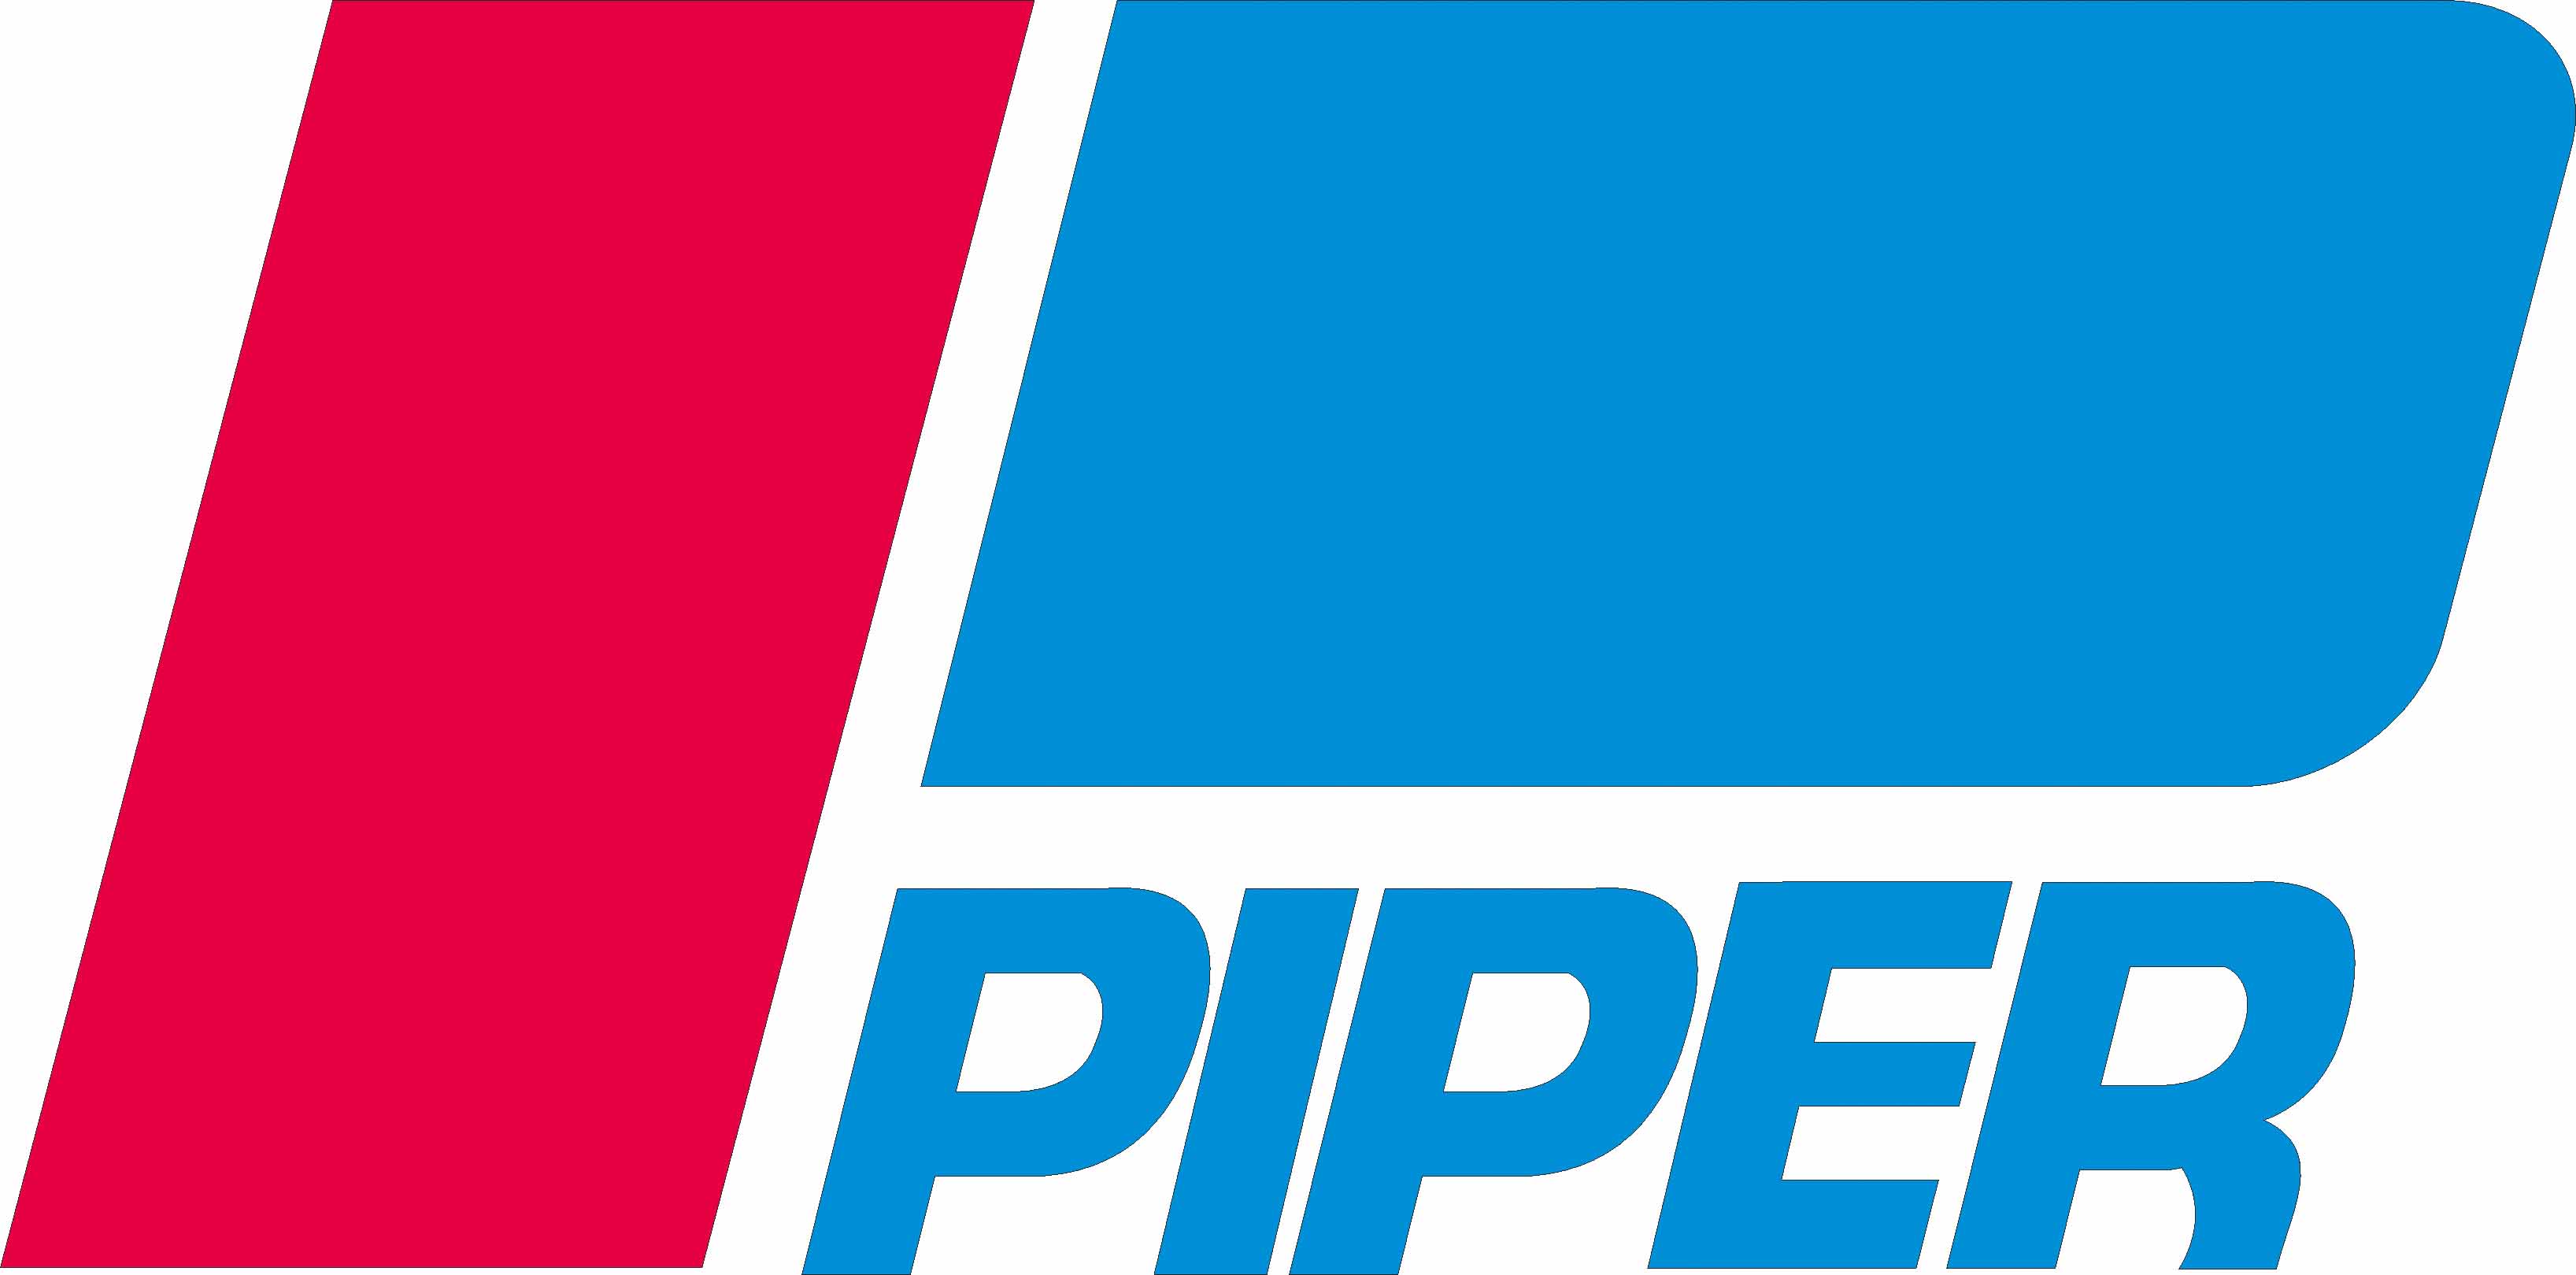 Piper Aircraft Logo - Piper aircraft Logos